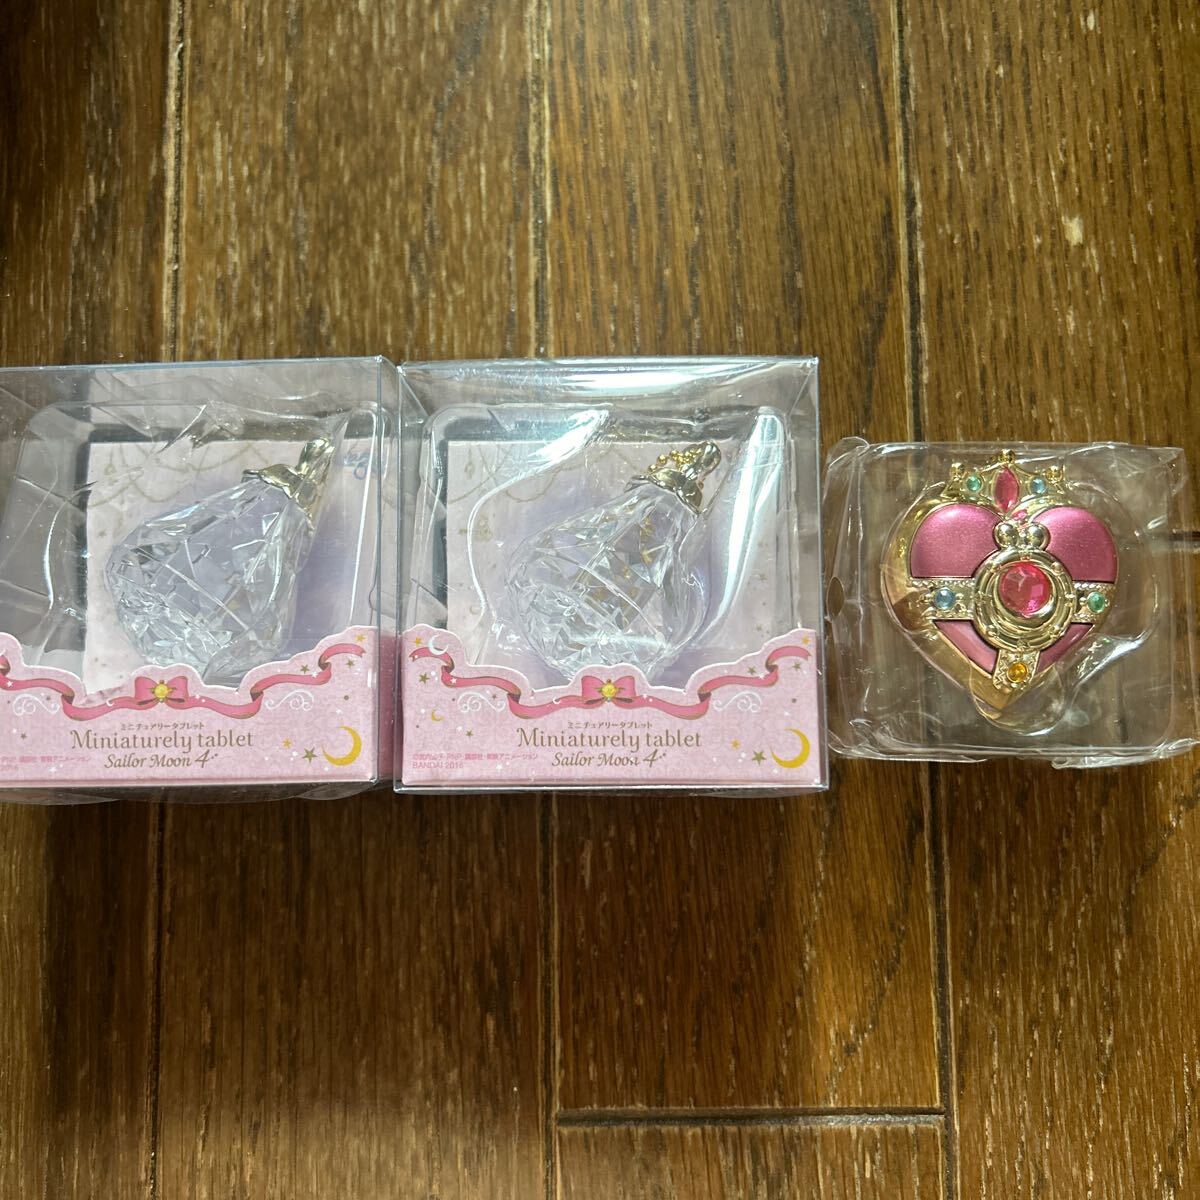  Pretty Soldier Sailor Moon miniature Lee tablet case 3 piece set 